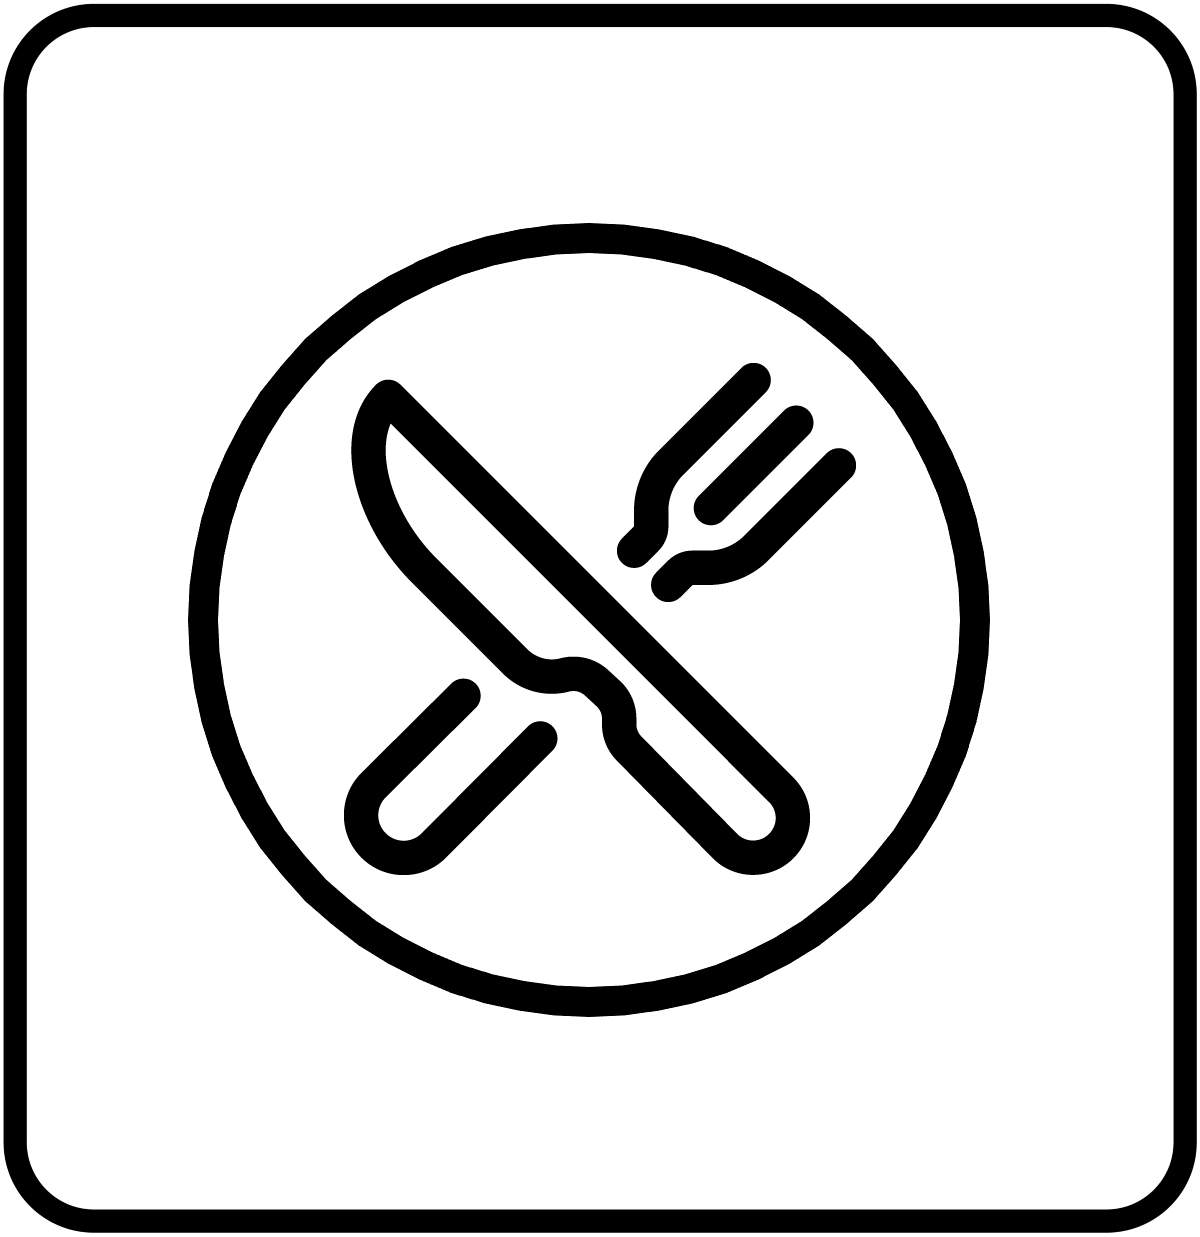 Piktogramm - Essen